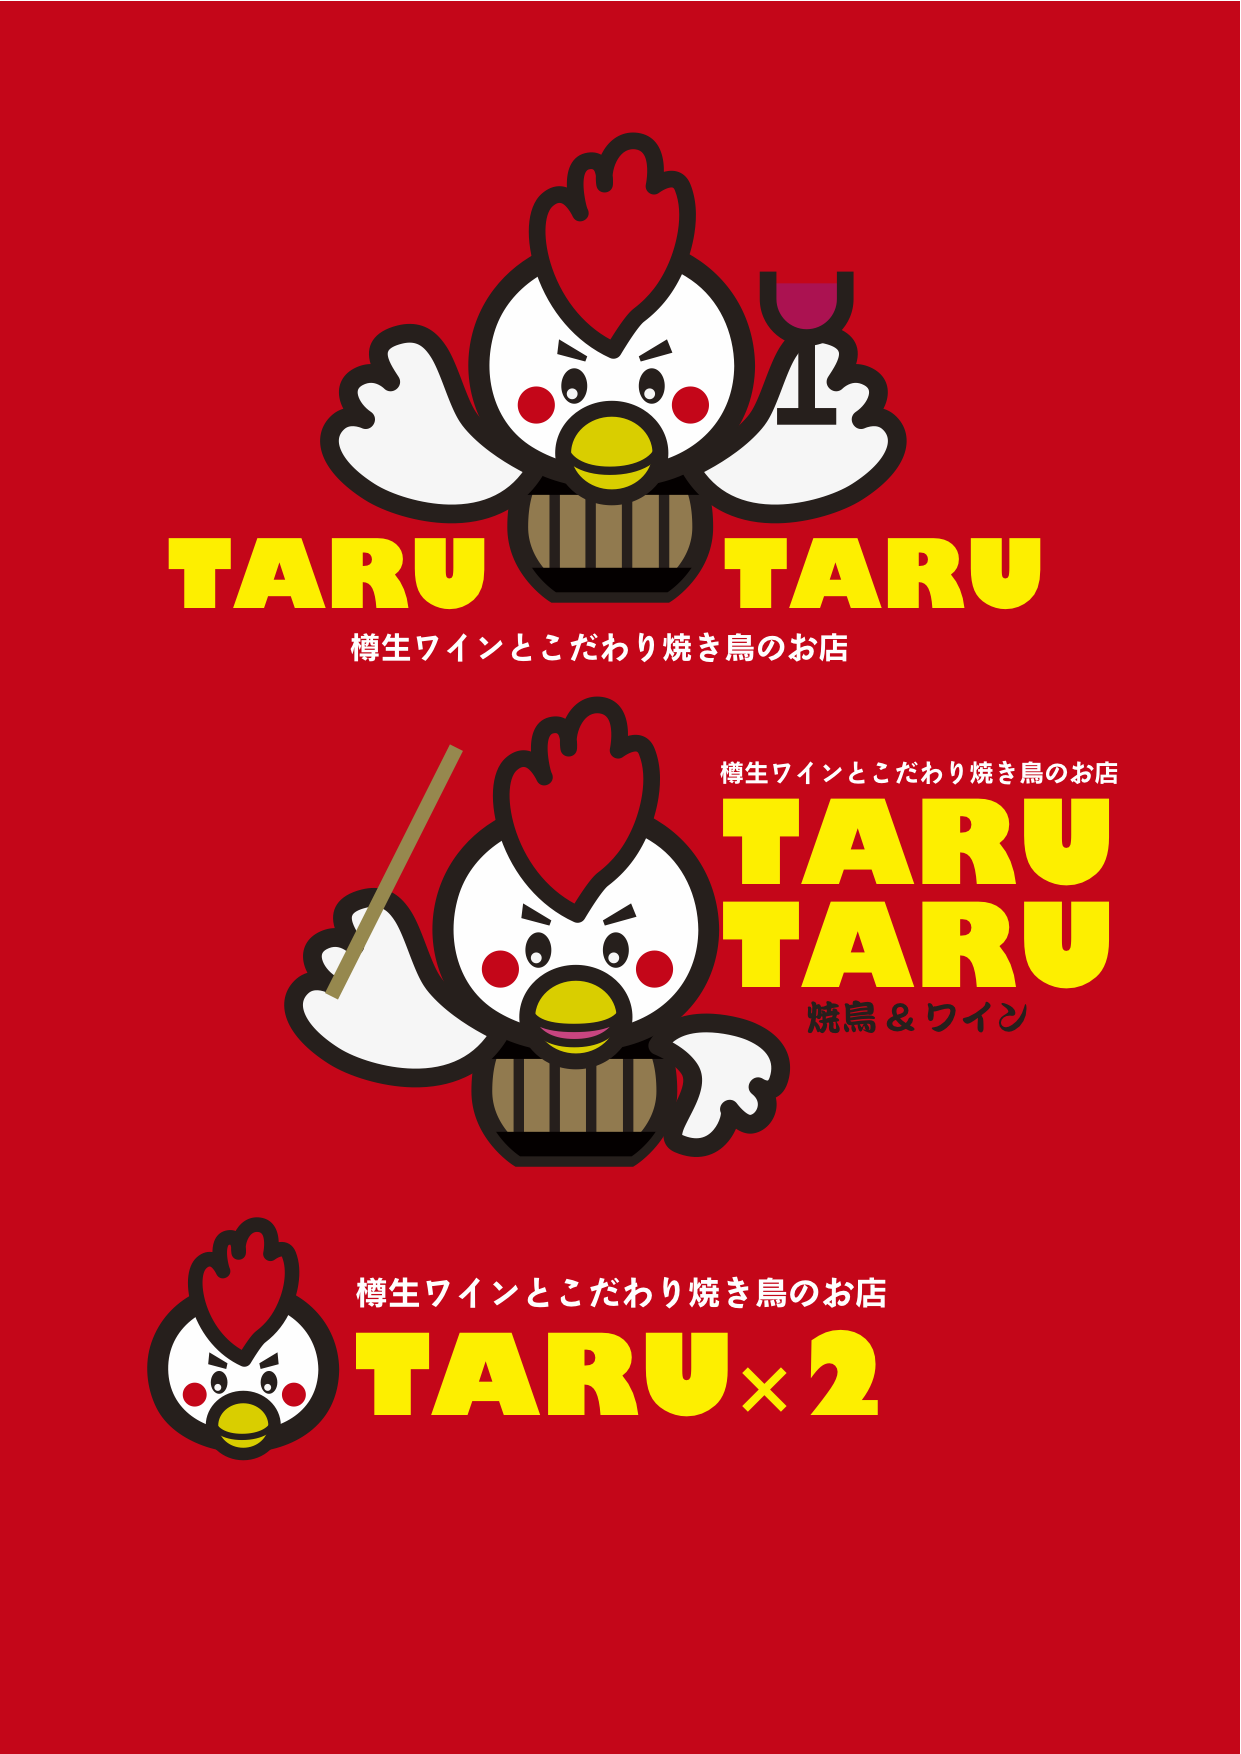 TARU TARU キャラクター